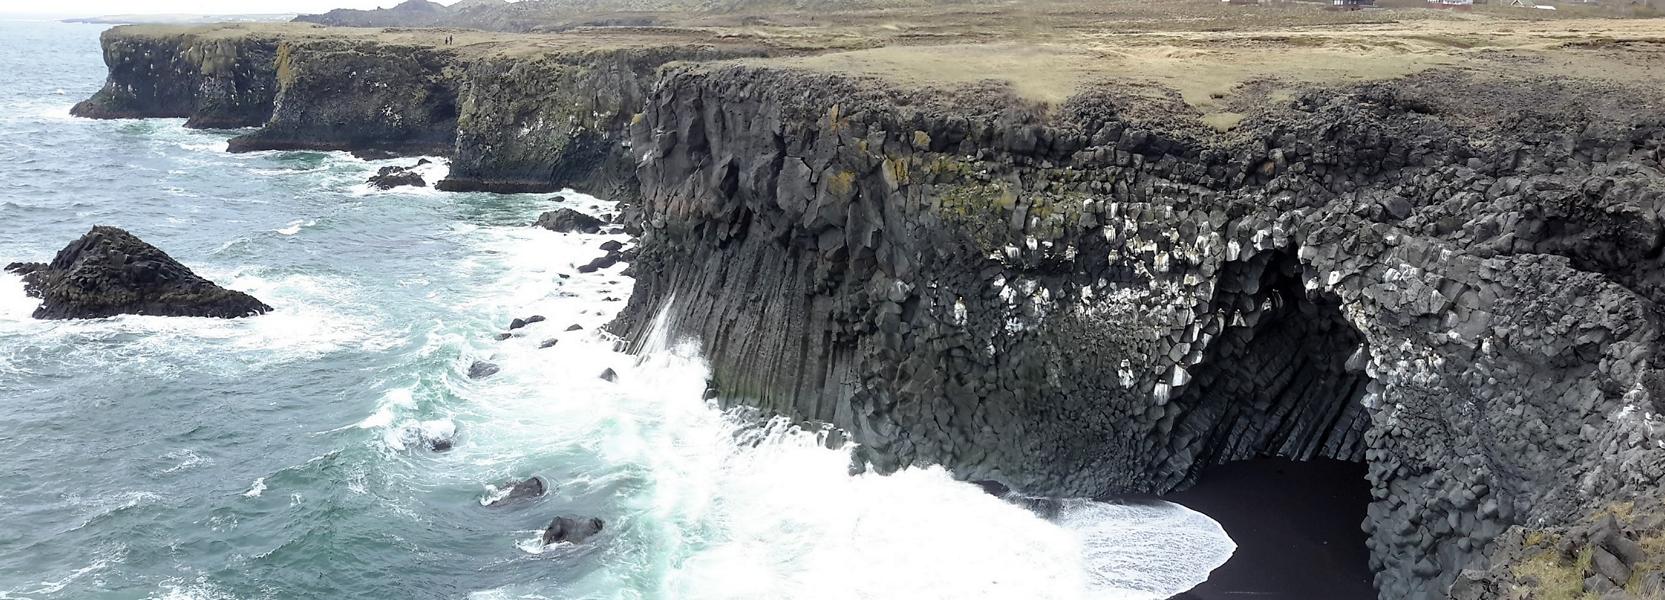 Die starken Wellen formen Höhlen in die Küste.